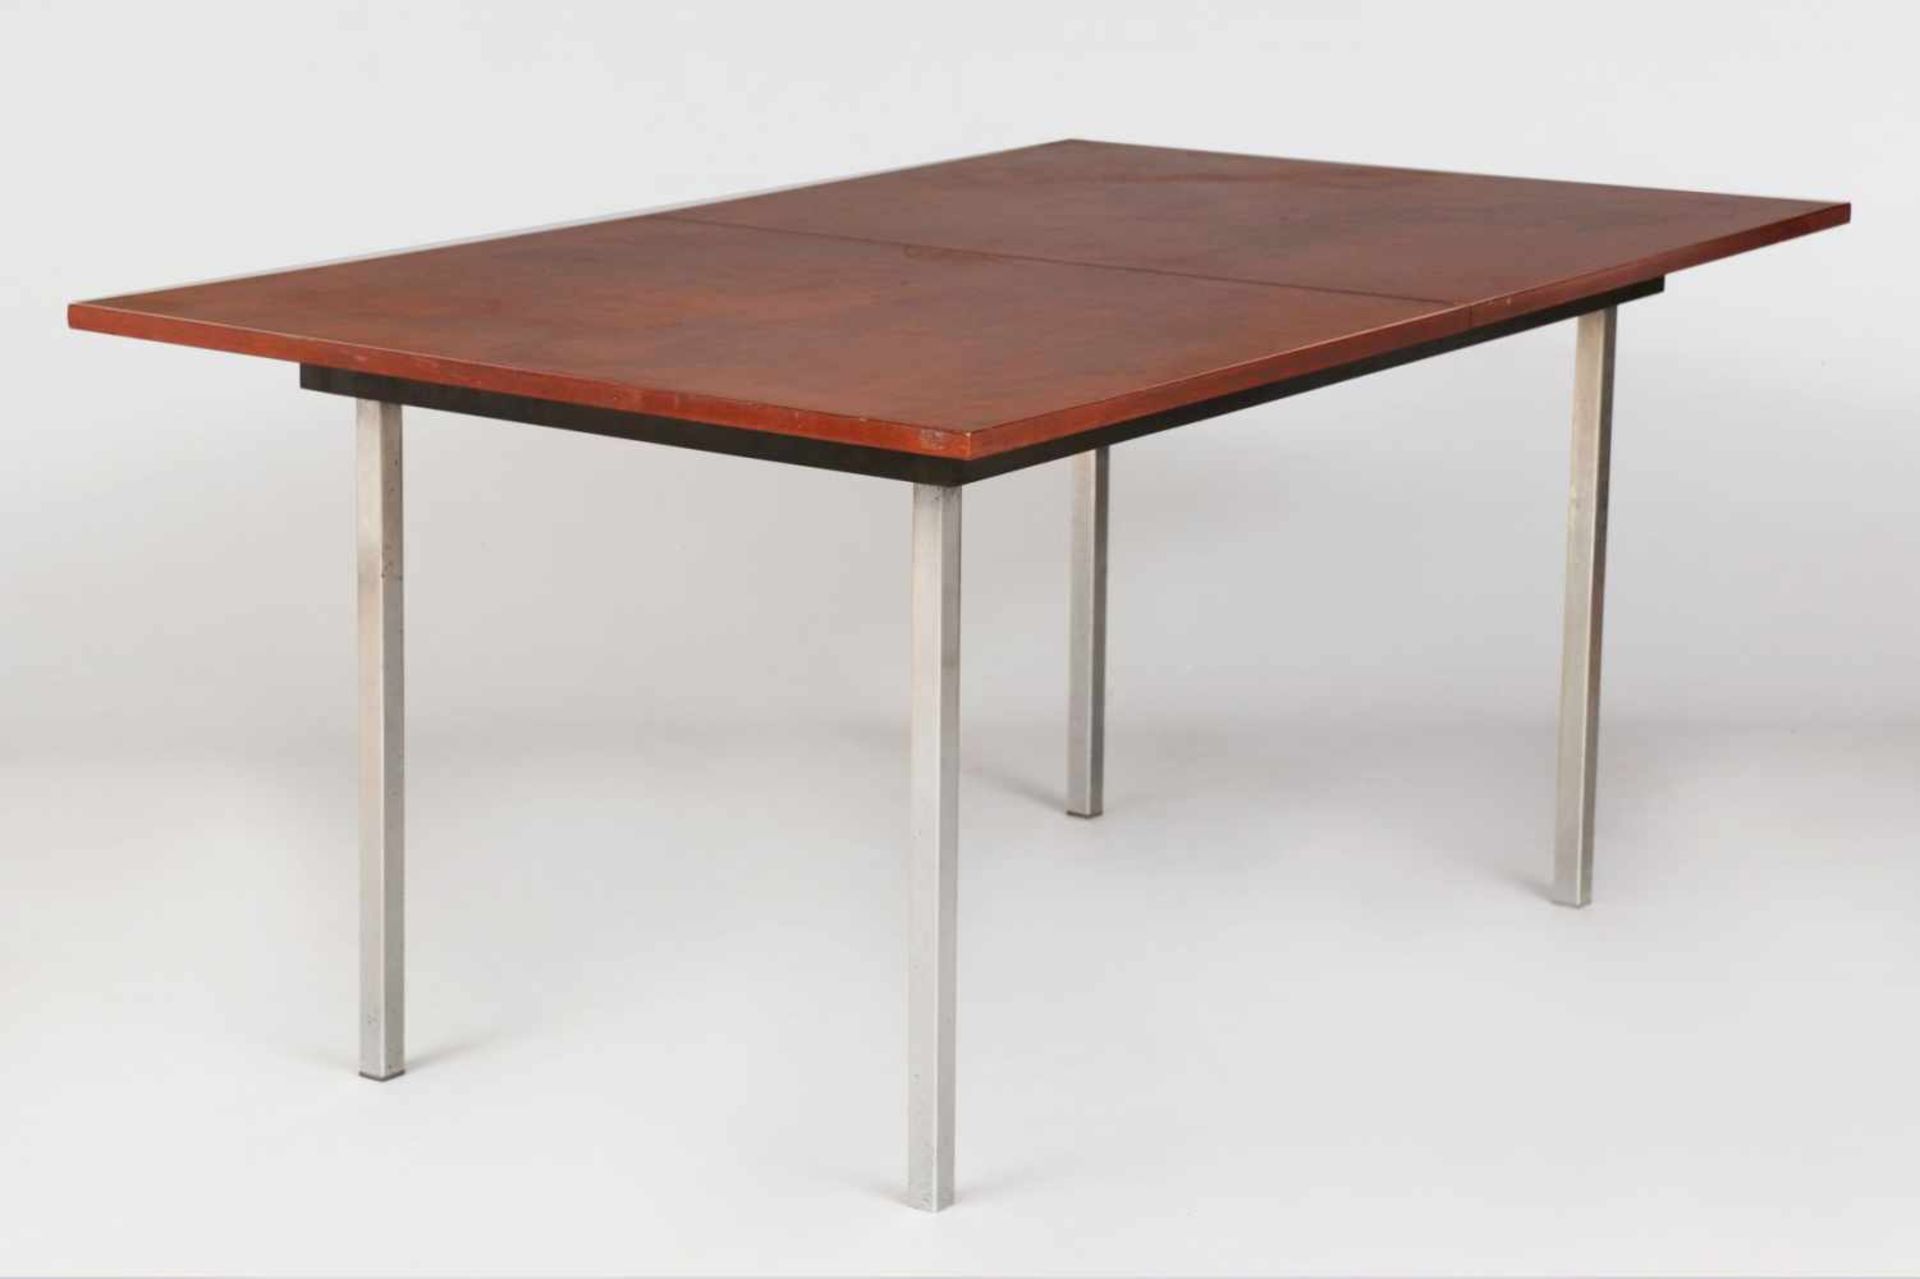 ALFRED HENDRICKX für Bel-Form Esszimmer-Tisch, Belgien um 1960/70, eckige, ausziehbare Platte mit 1